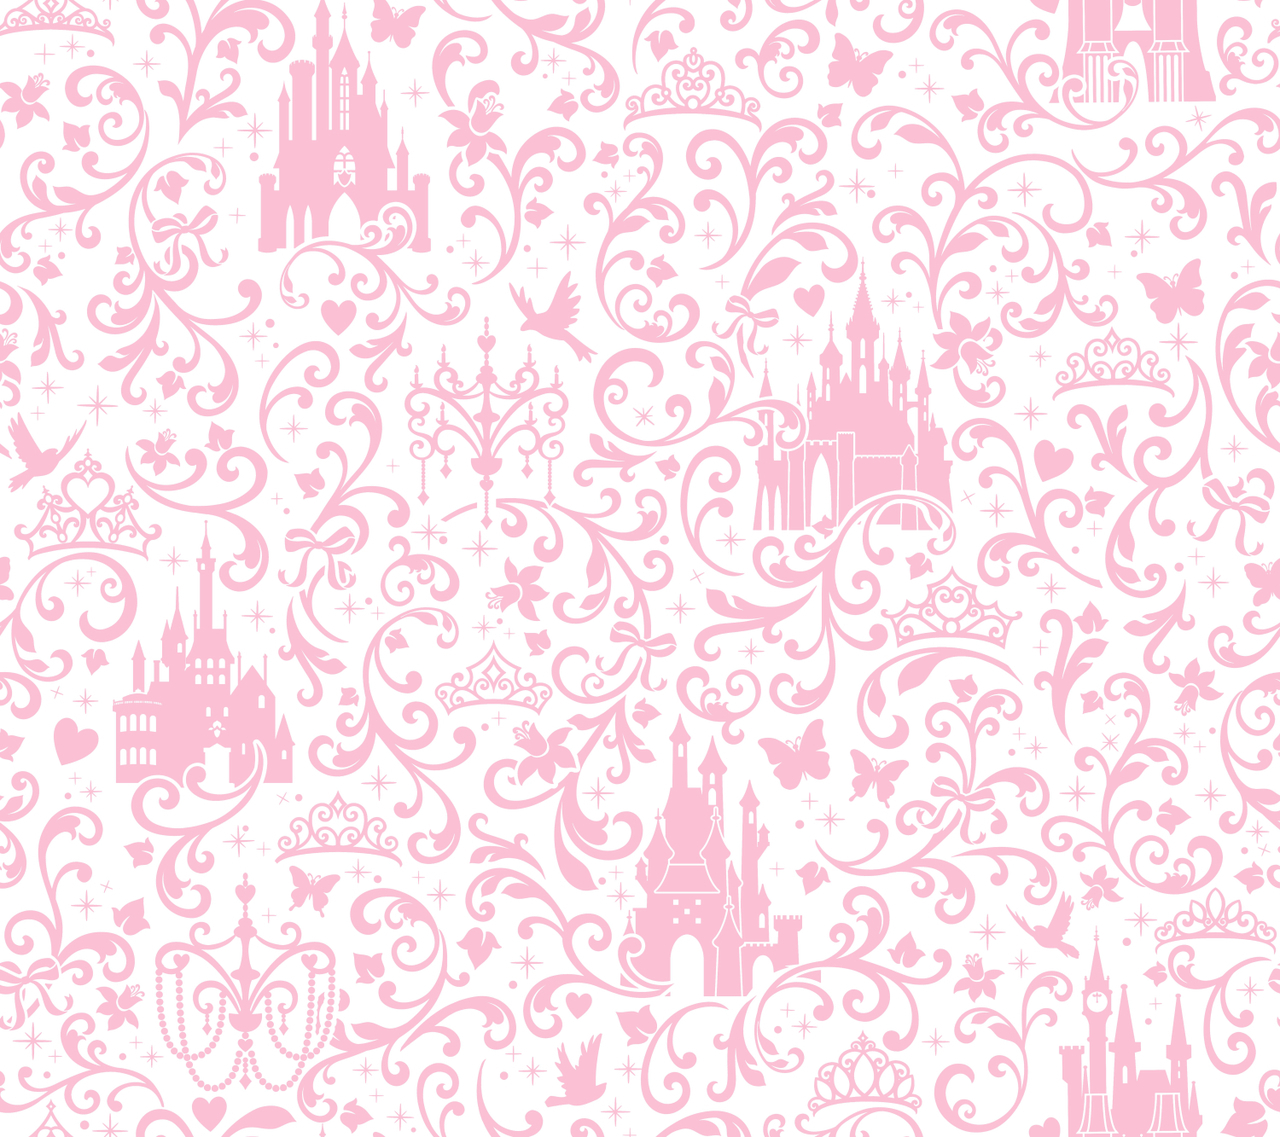 Khám phá không gian thần tiên với hình nền lâu đài hồng - một thiết kế đầy mê hoặc với sắc hồng tinh tế và hoa văn độc đáo. Chúng tôi đảm bảo bạn sẽ không thể rời mắt khỏi hình nền lâu đài hồng độc đáo này.